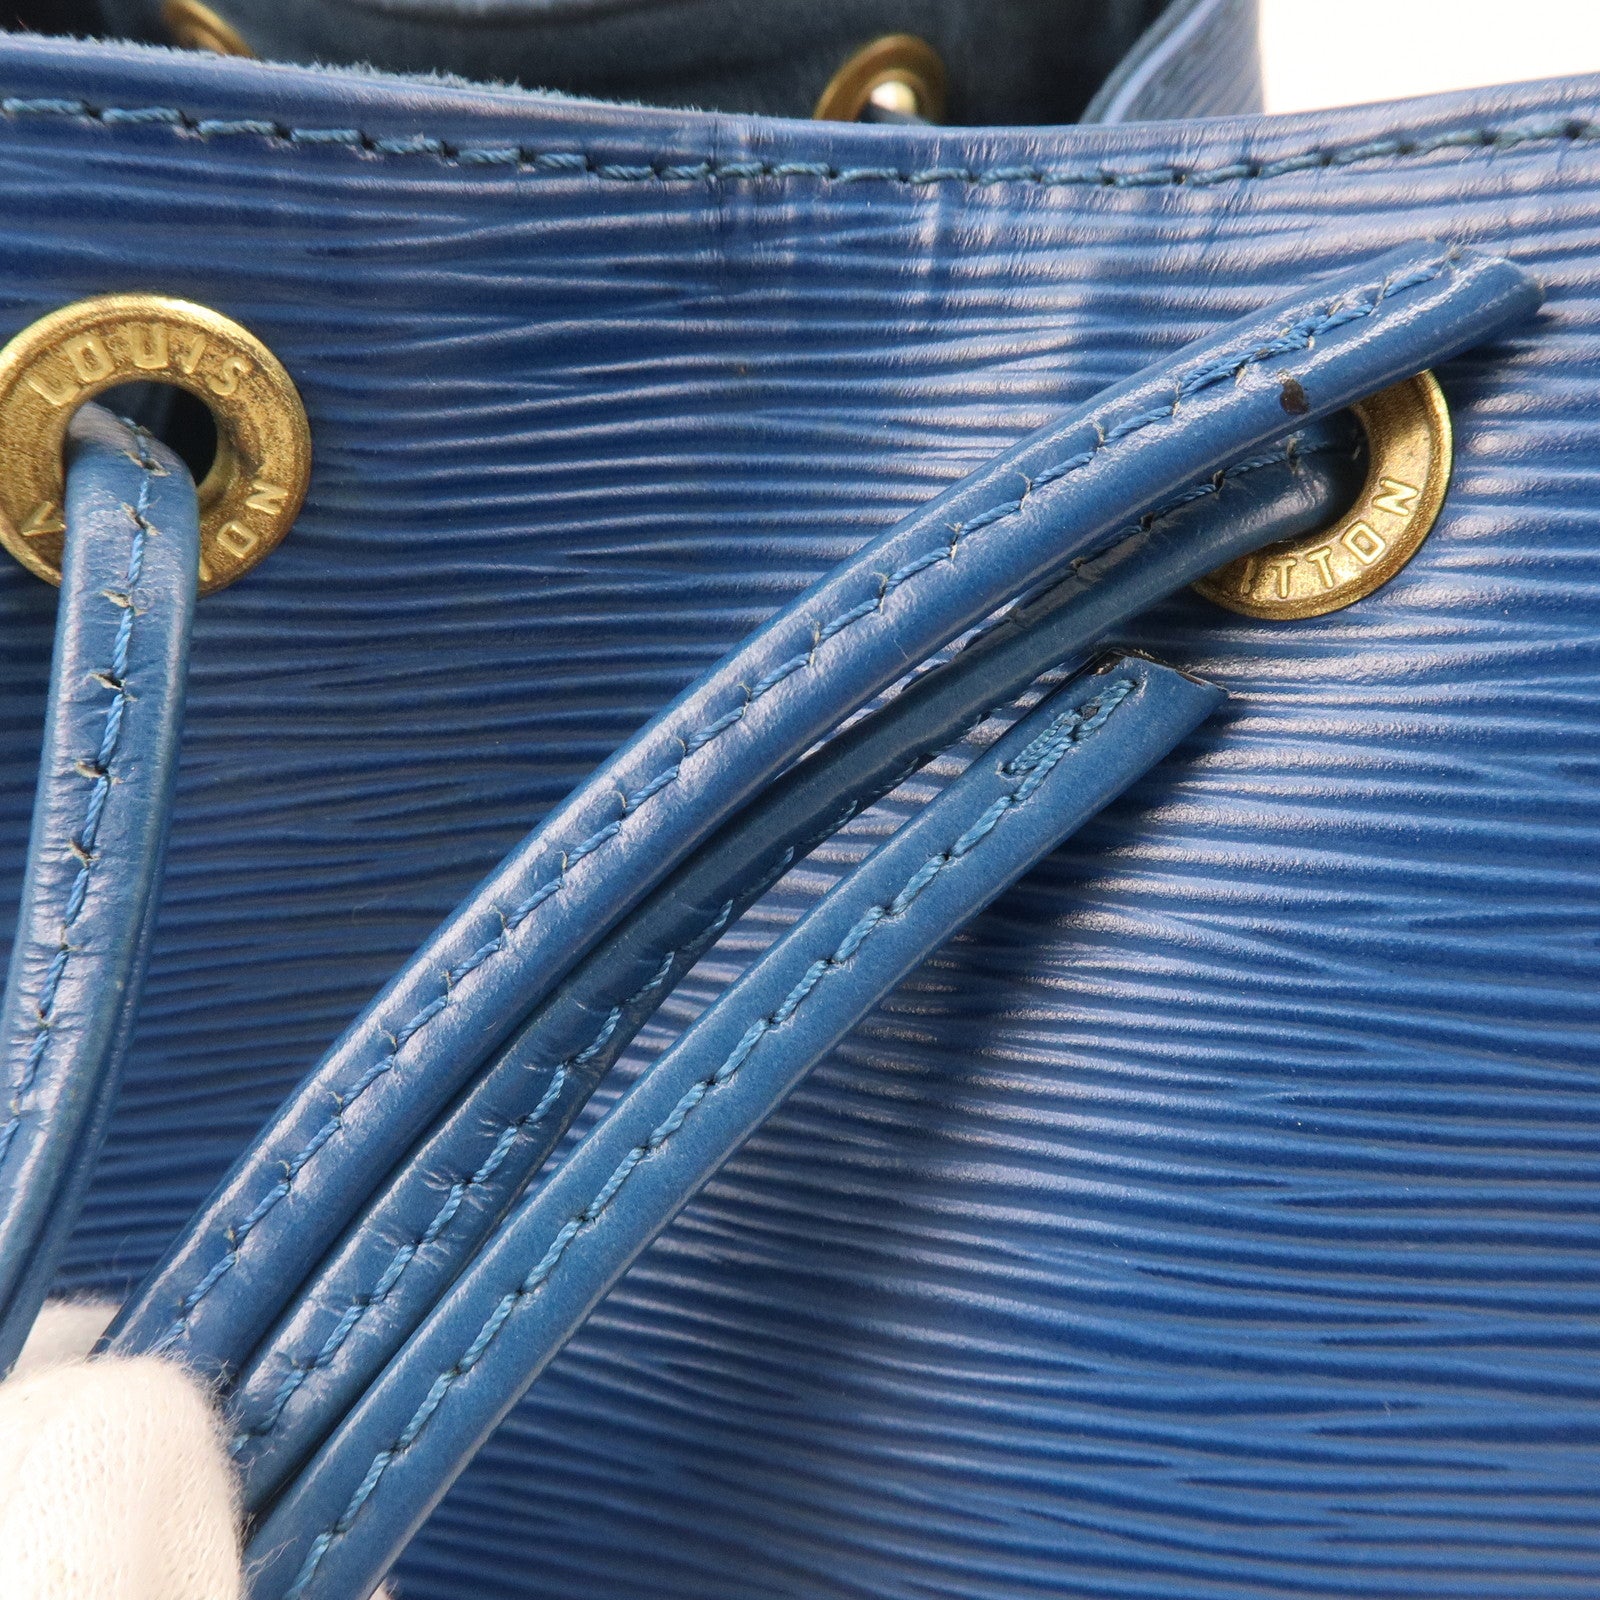 Louis Vuitton Toledo Blue Epi Leather Noe Bag Louis Vuitton